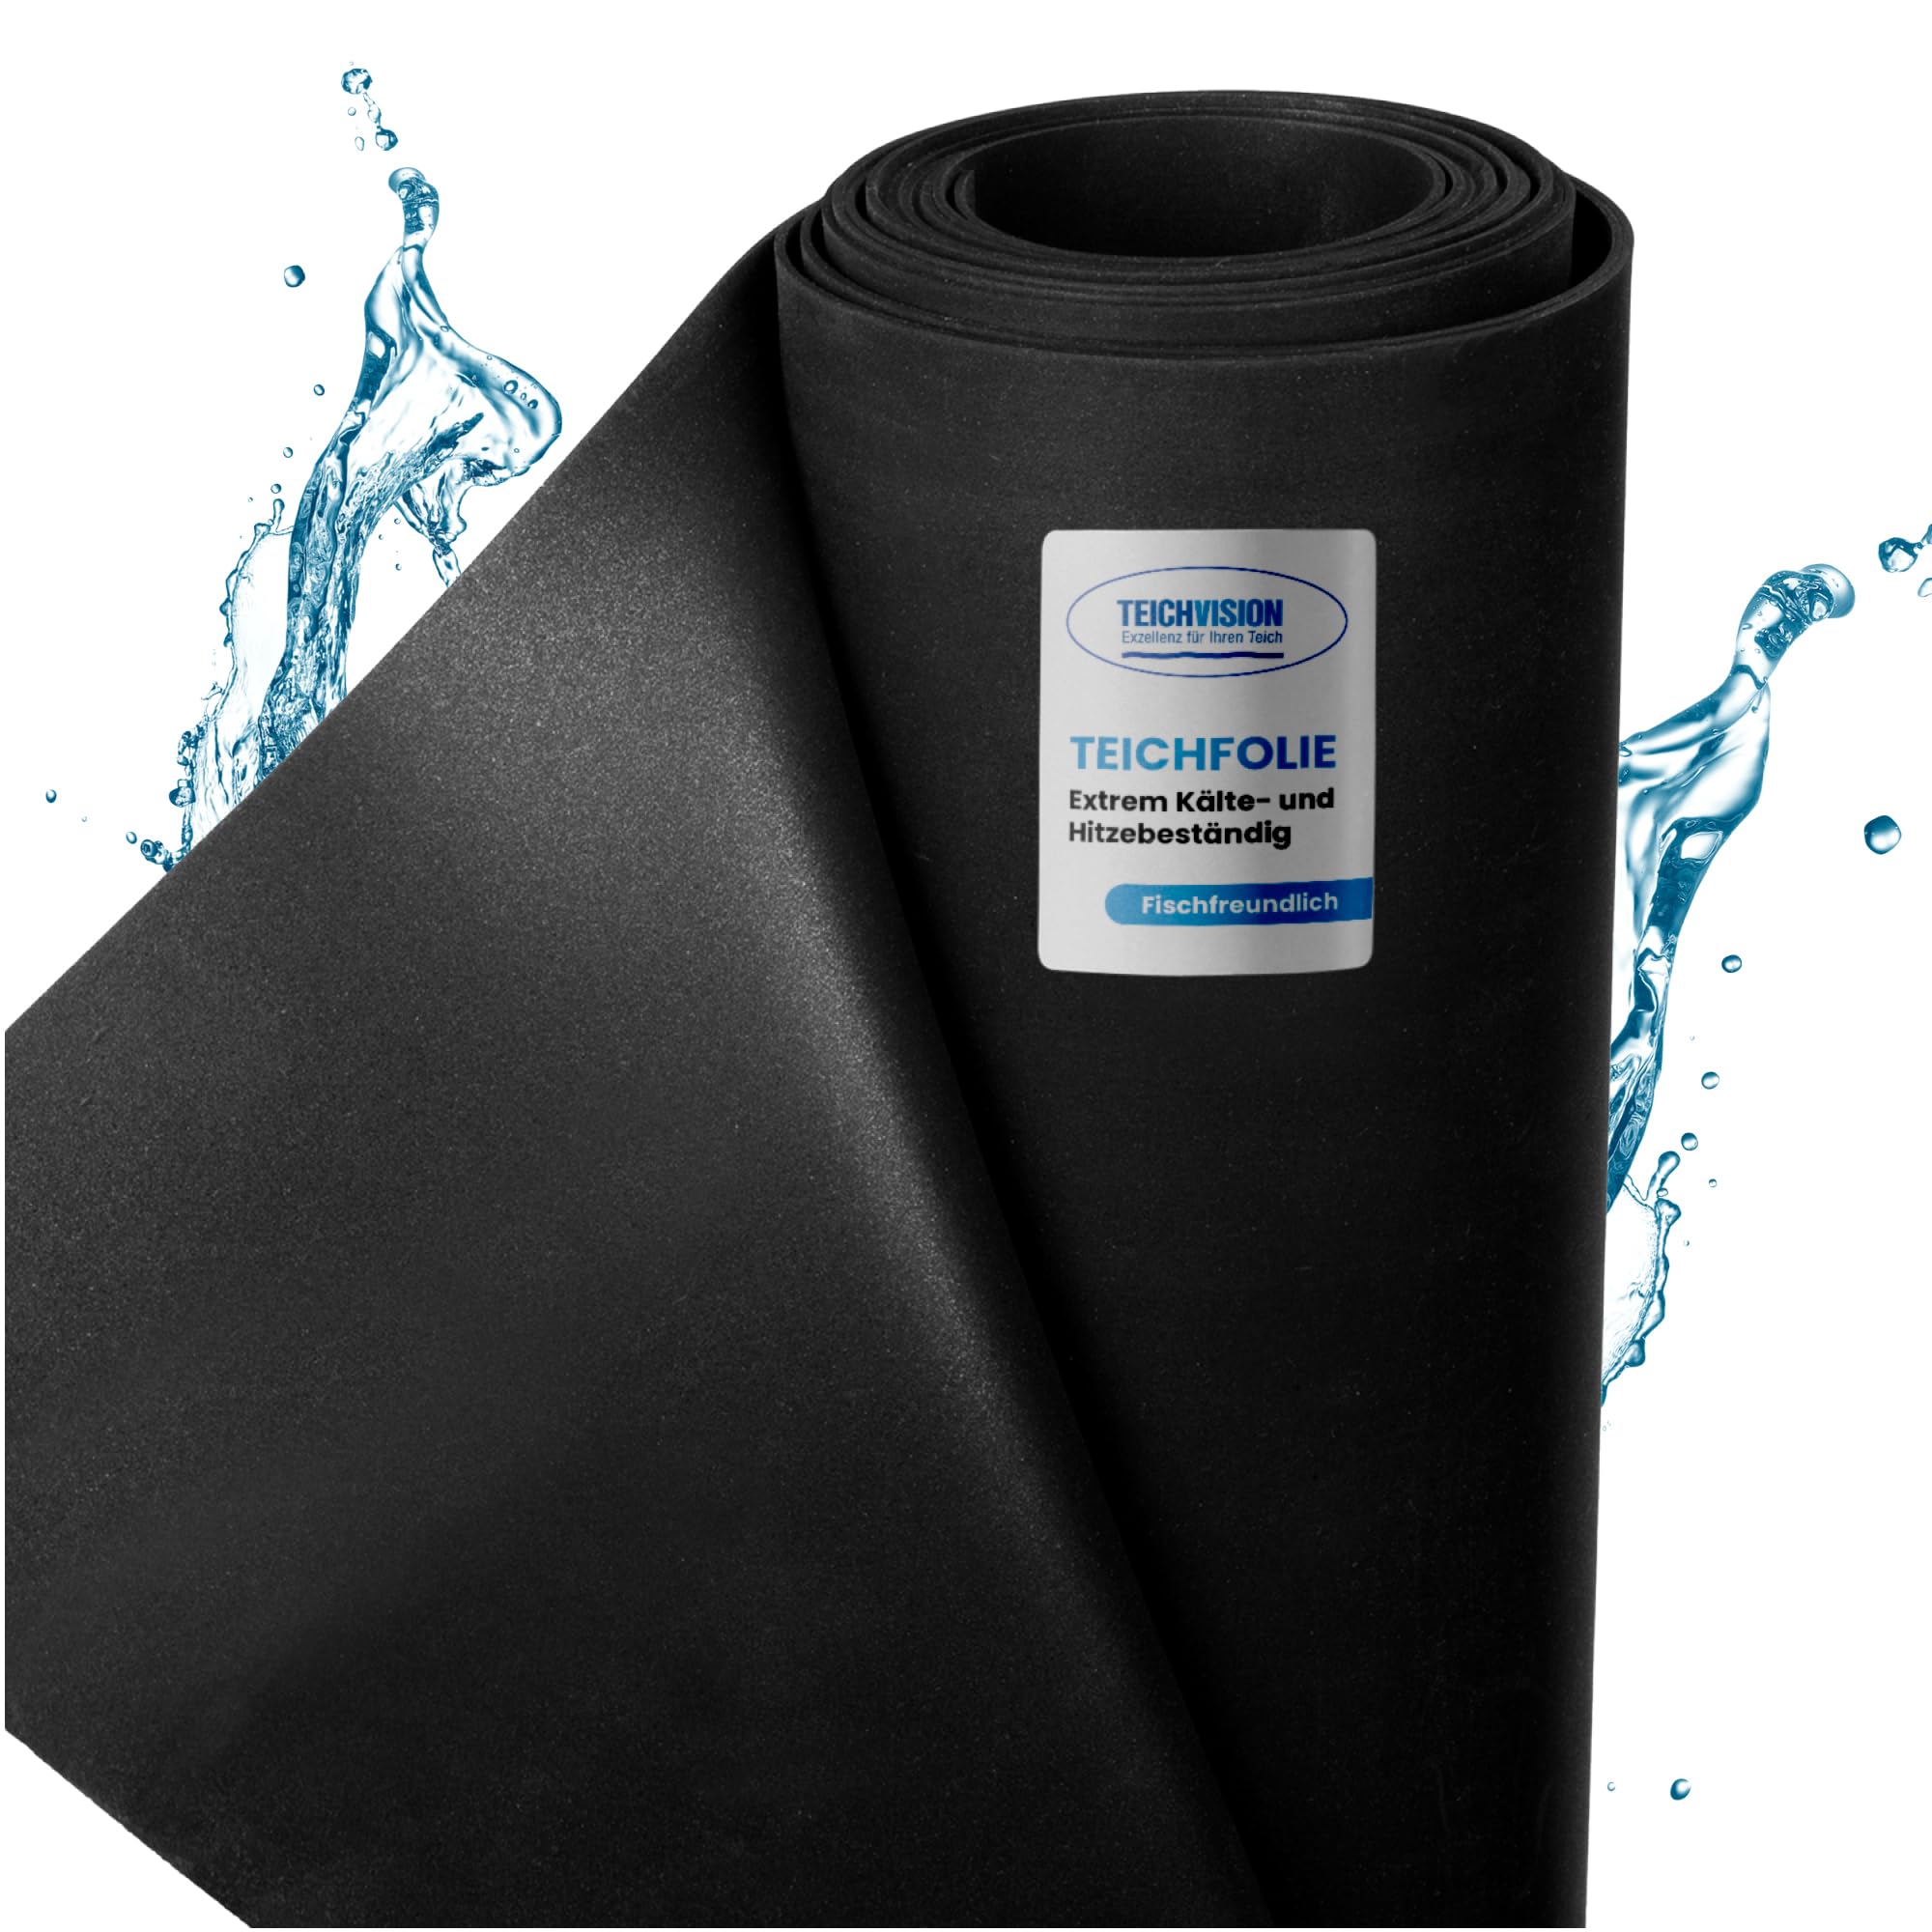 TeichVision - Premium EPDM Teichfolie Stärke 1 mm - 12,2 m x 6 m/naturgerechte EPDM Folie schwarz - besonders langlebig/auch geeignet als Hochbeet Folie wasserdicht